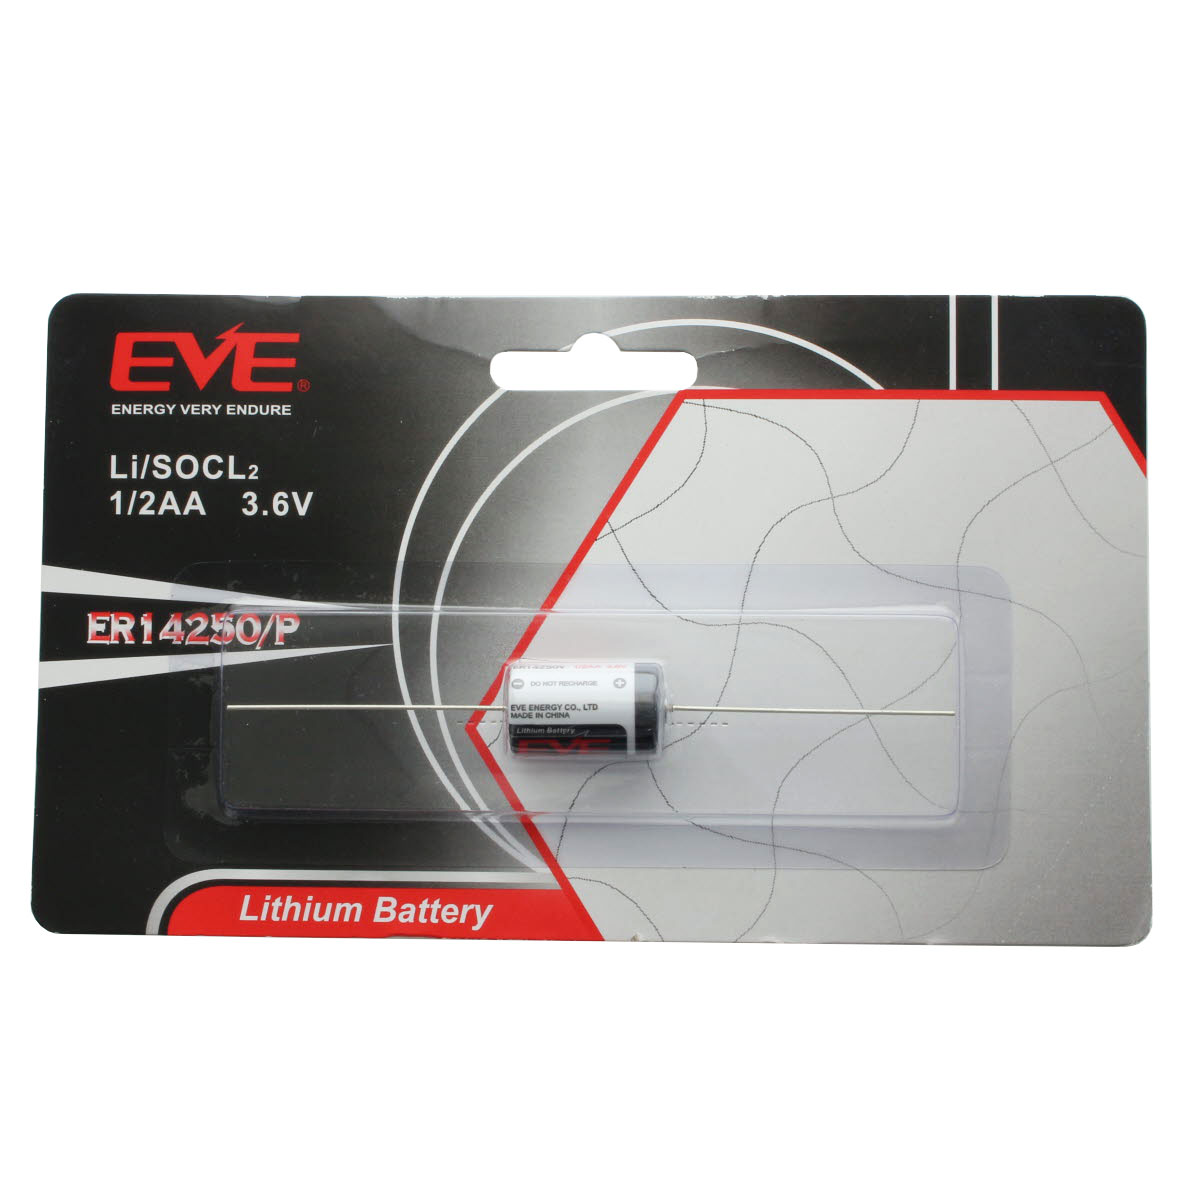 EVE ER14250P Lithium Batterie mit axialem Drahtanschluss